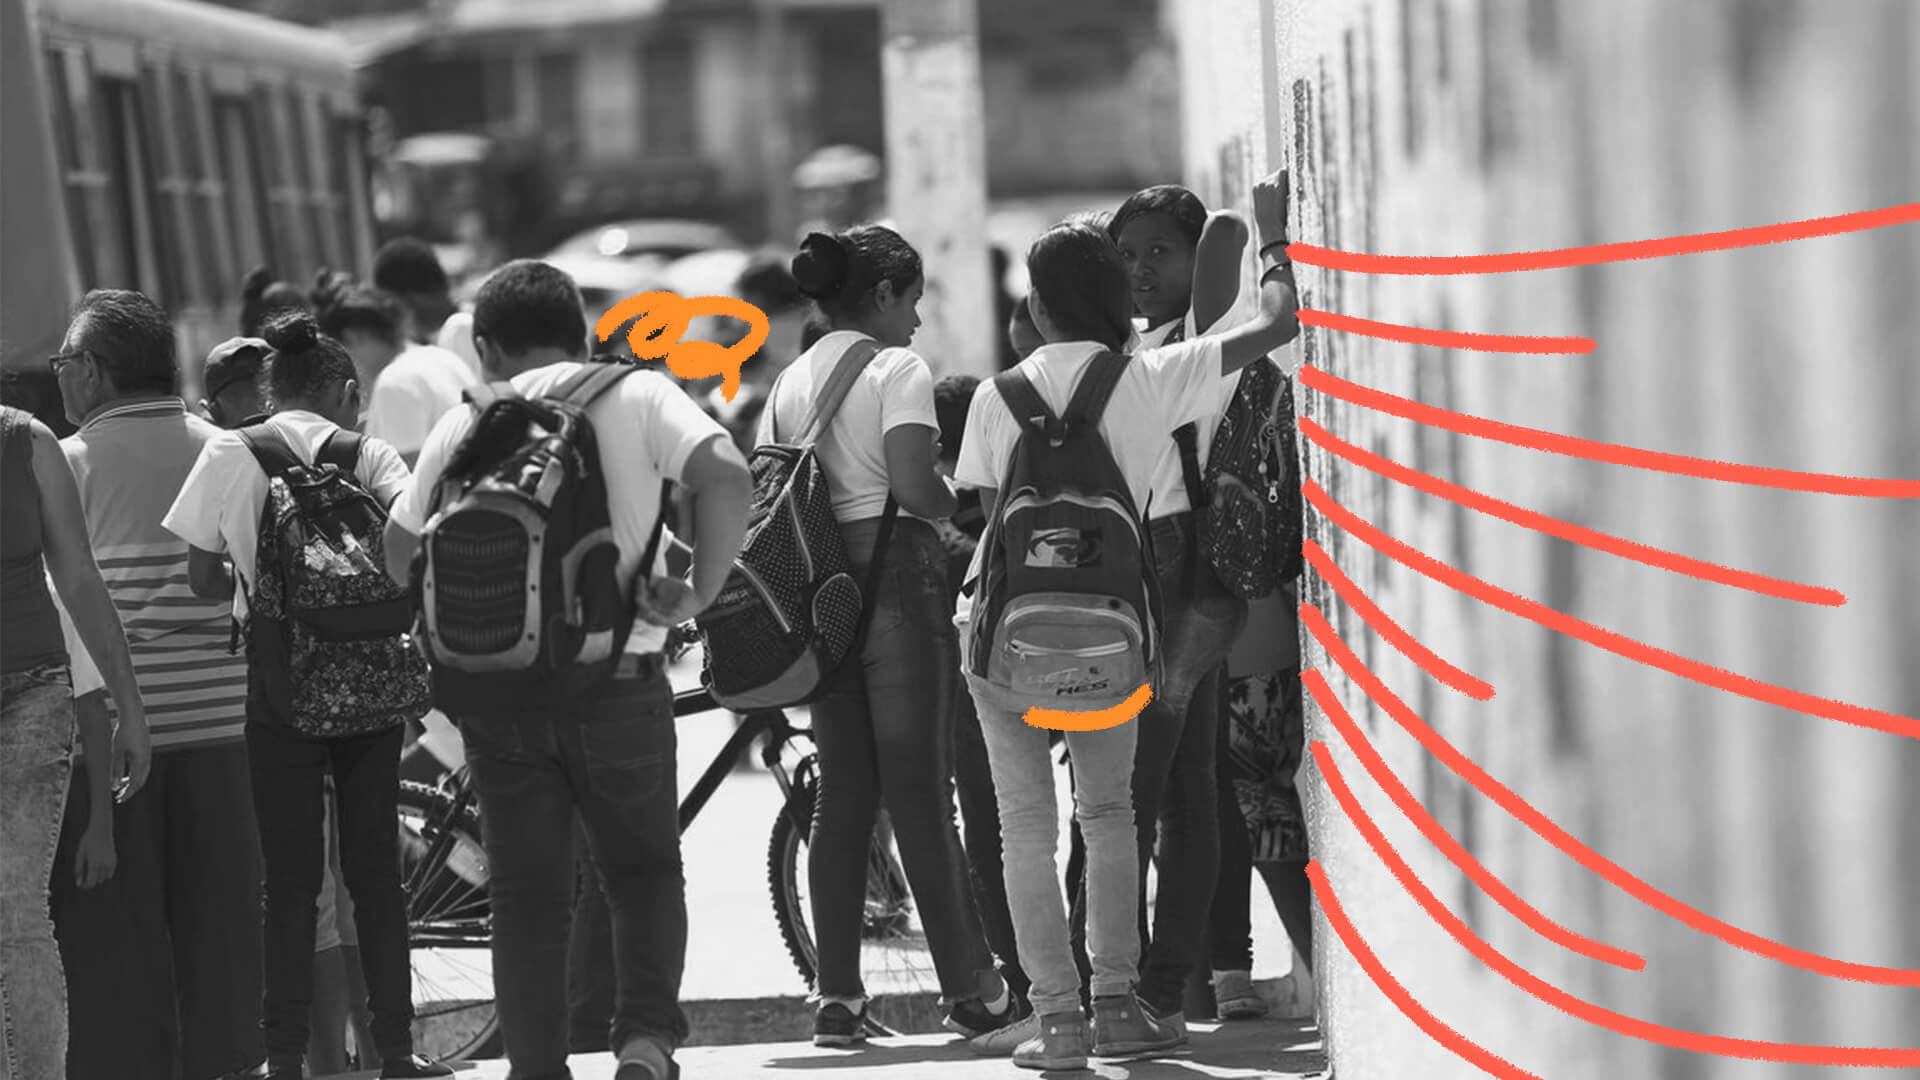 Violência no ambiente escolar: imagem em preto e branco de estudantes reunidos, com mochilas e uniformes.